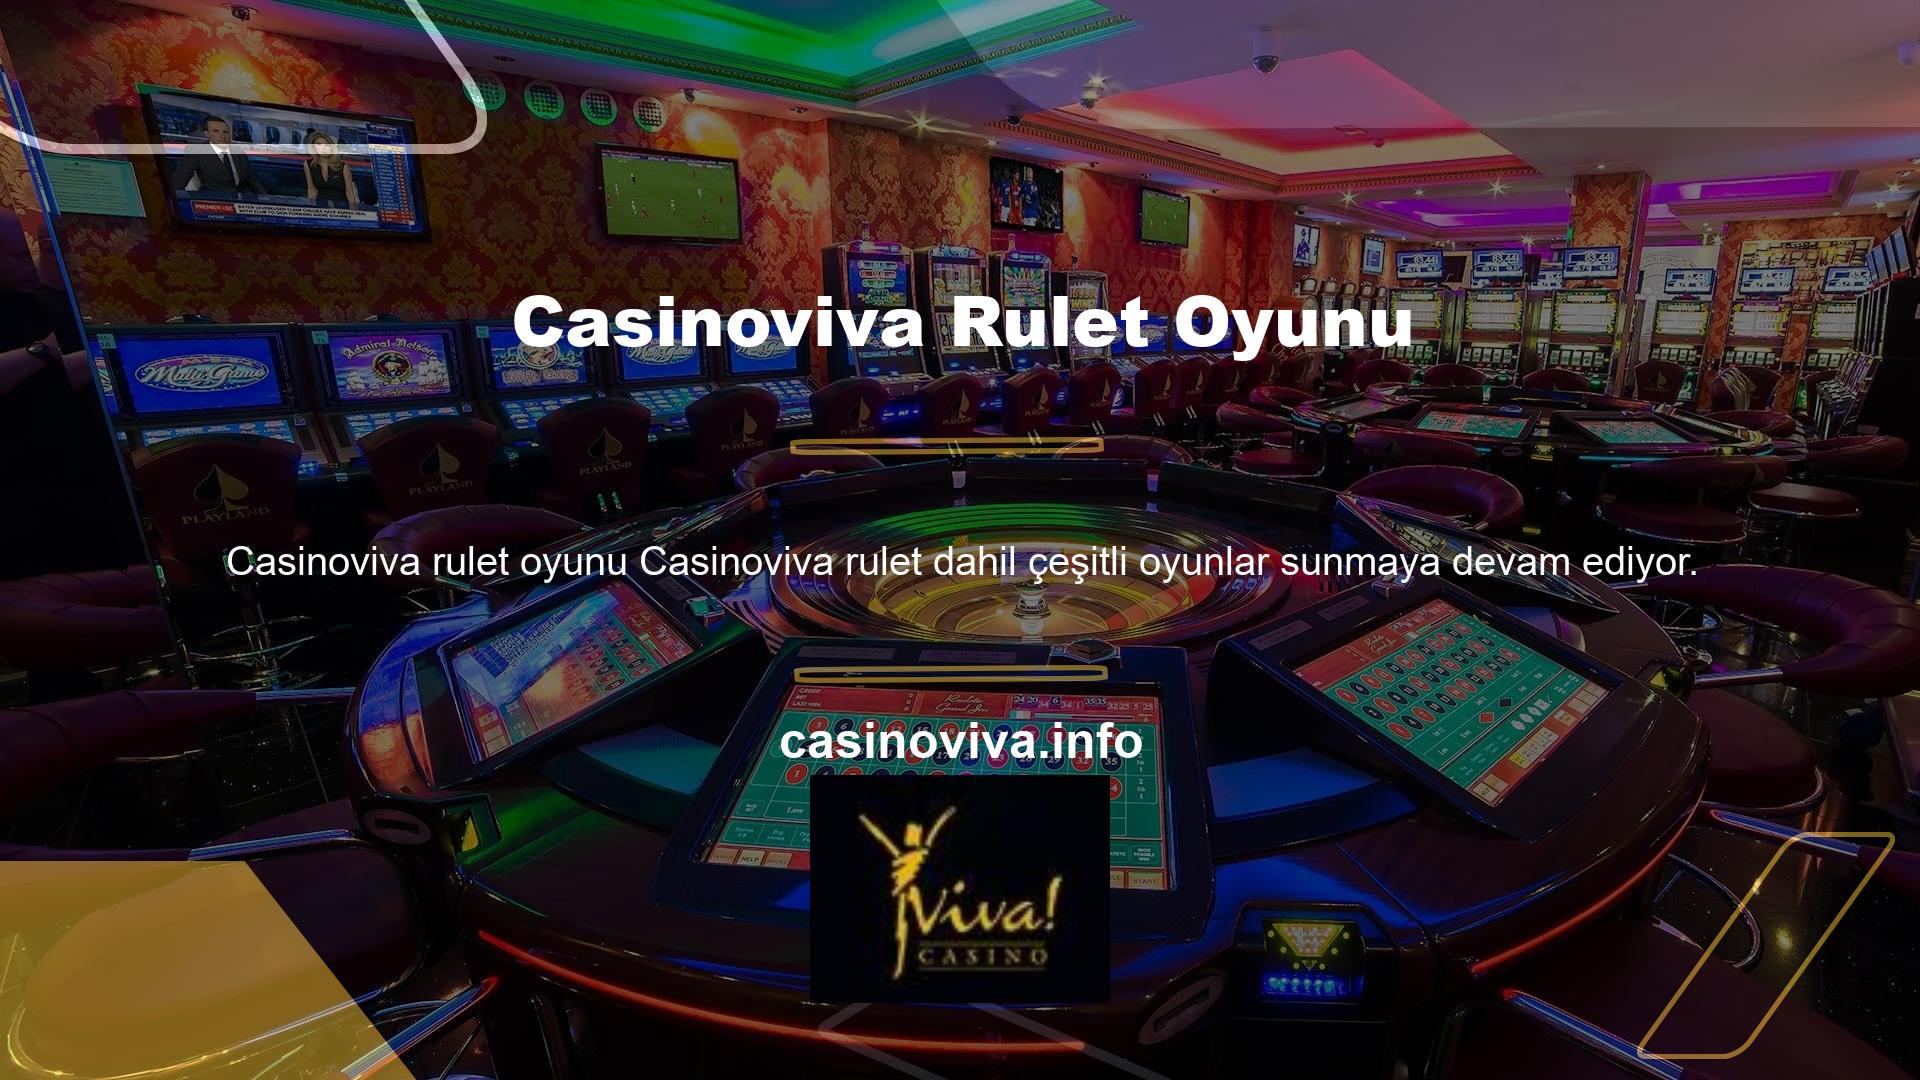 Oyuncuların en çok ilgi duyduğu şeylerden biri Casinoviva